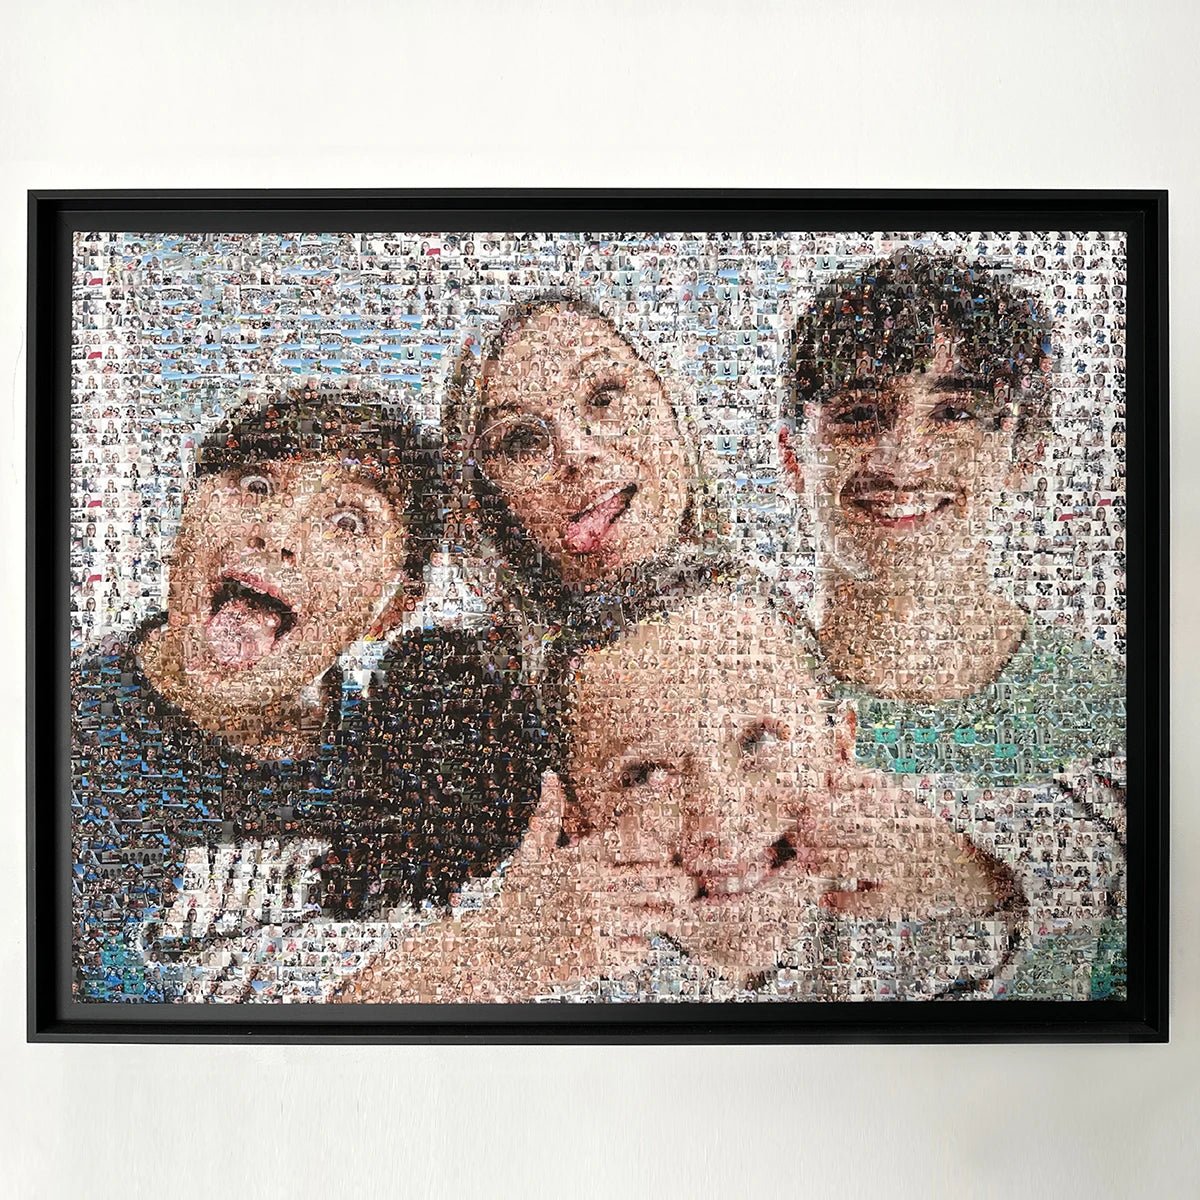 Photo mosaïque d'une famille - Maximum de 4 visages - Studio Pop Art